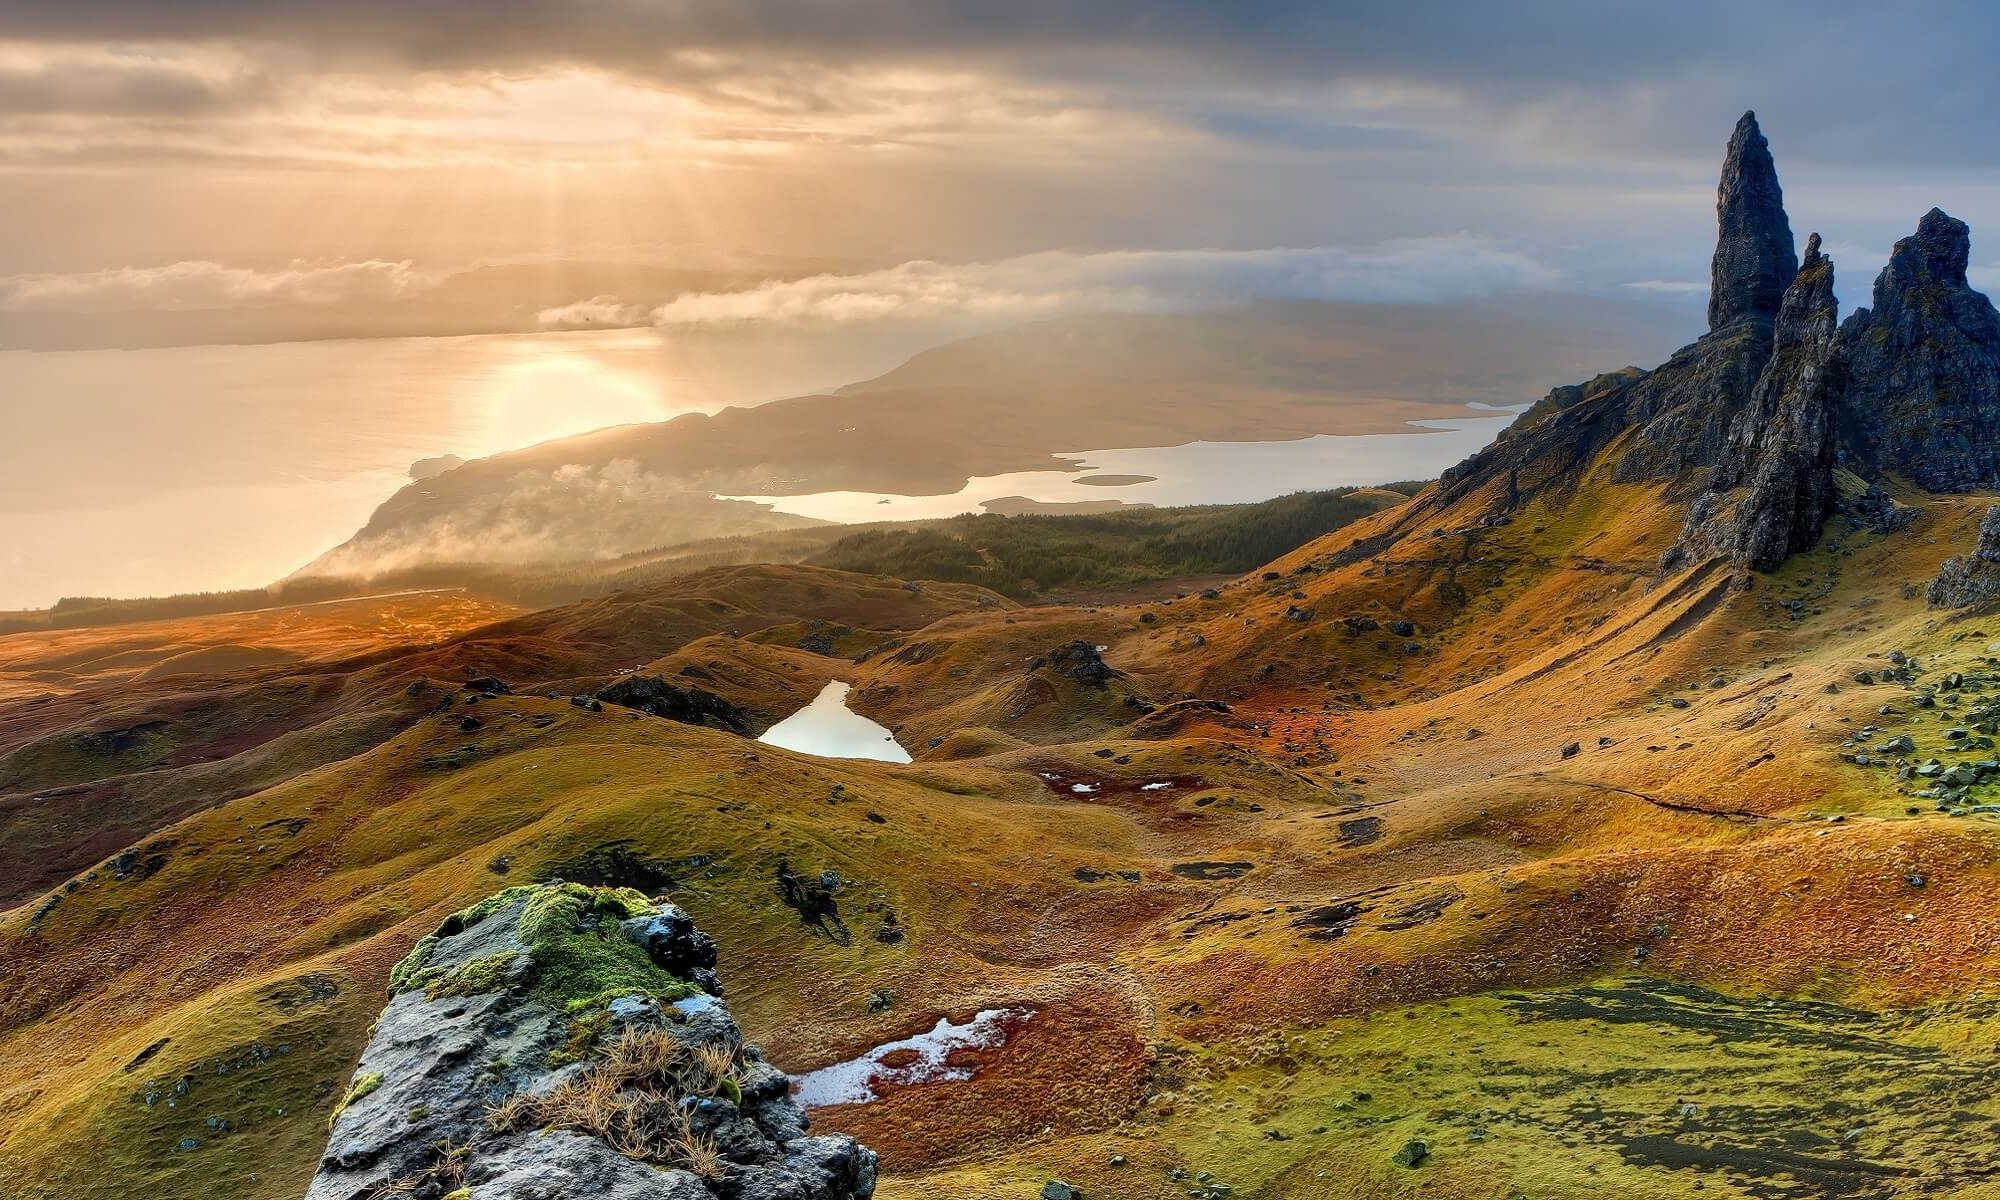 Erleben Sie auf Ihrer Singlereisen die einzigartige Landschaft von Schottland